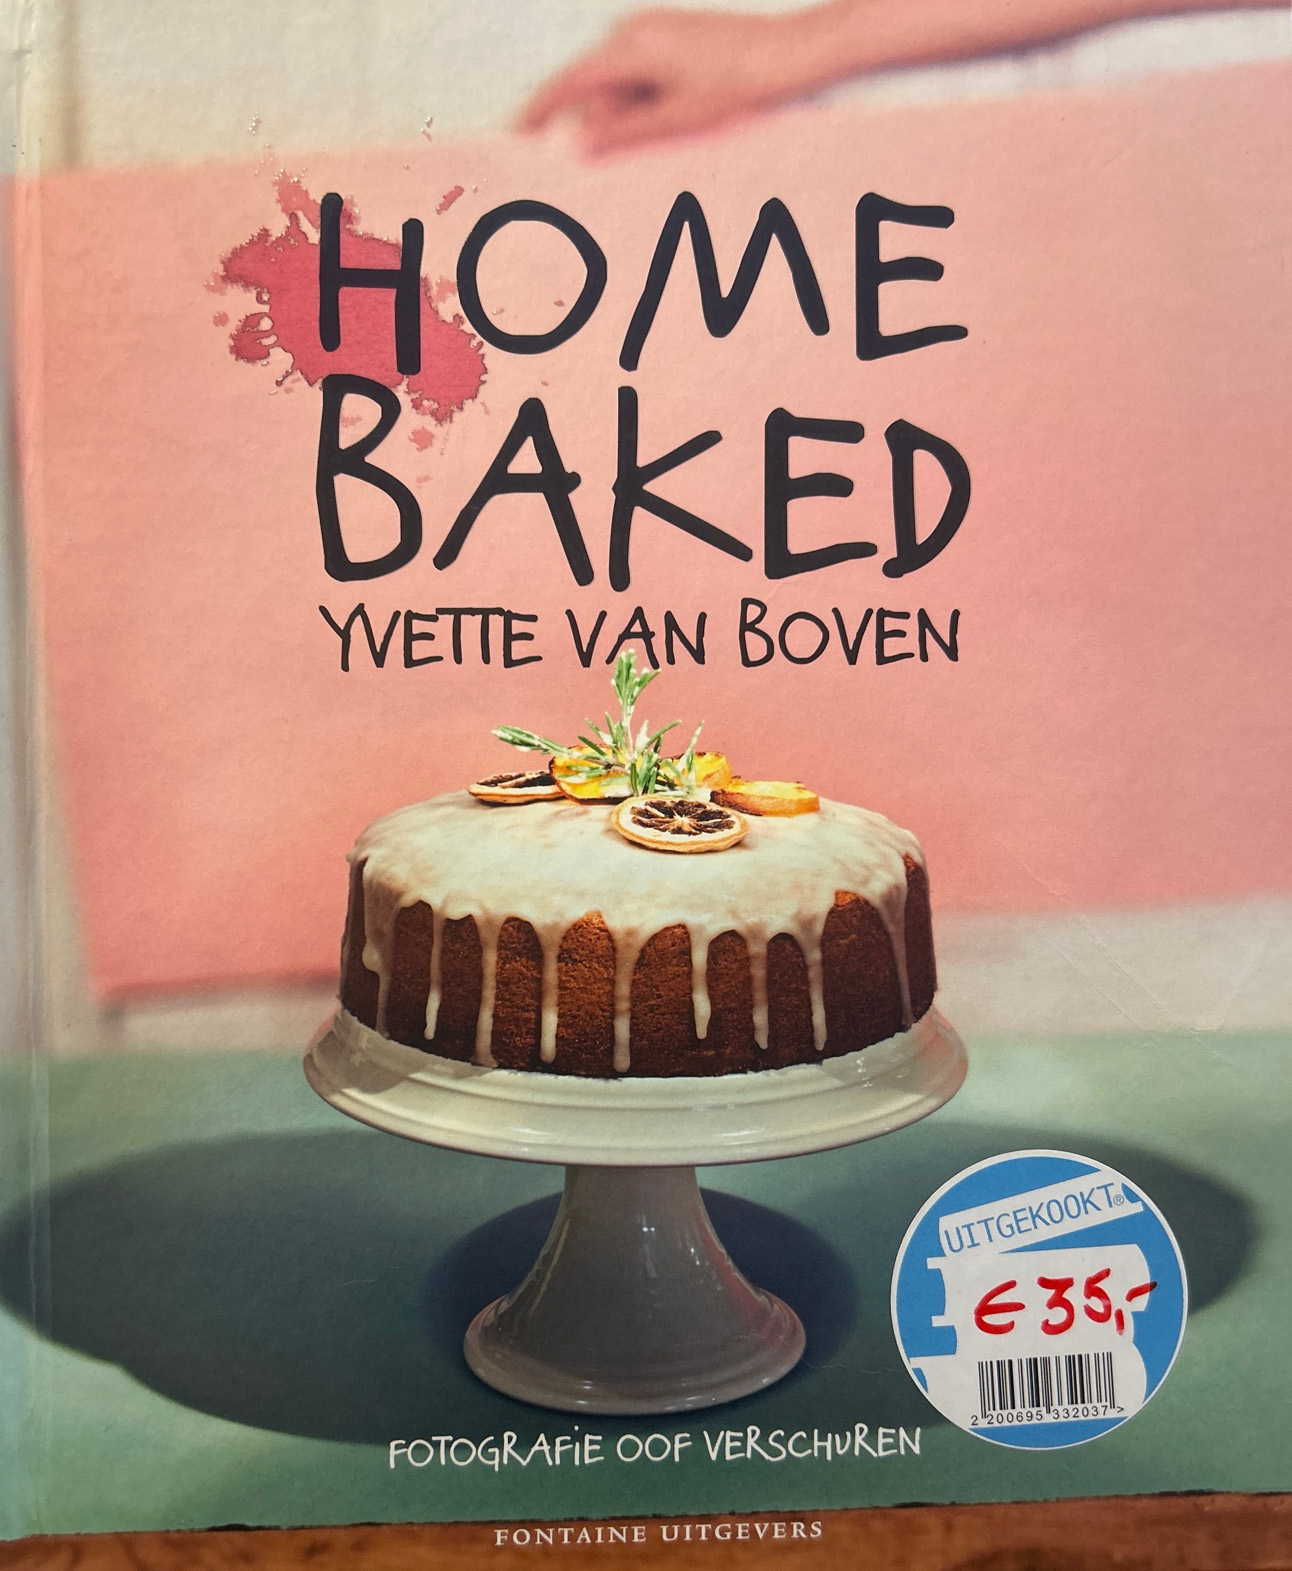 Home Baked – Yvette van Boven